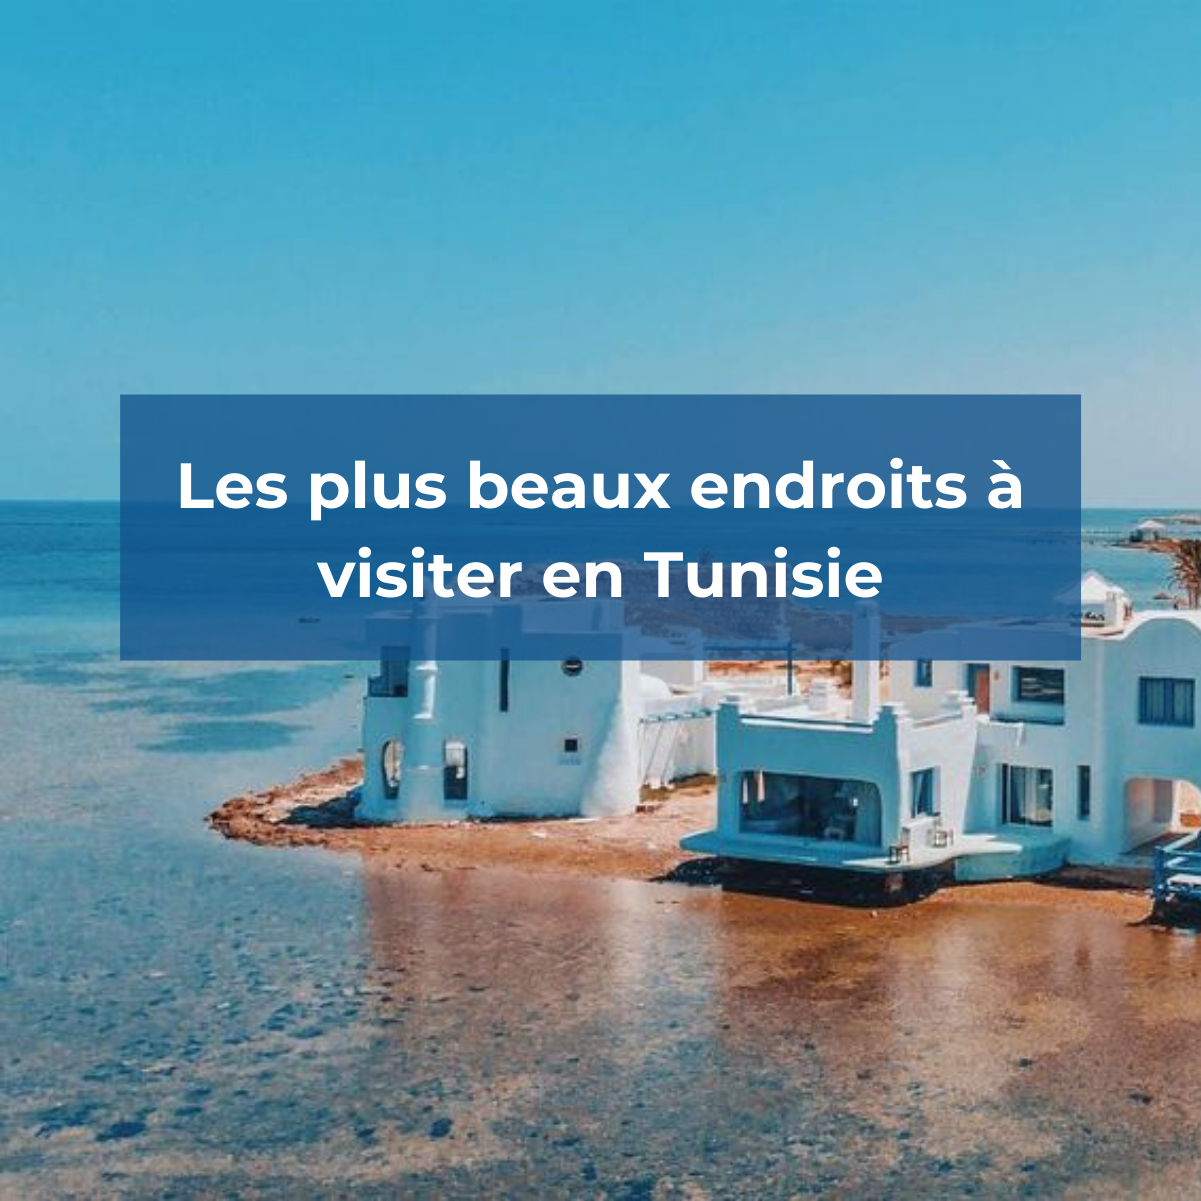 Biben Jdaria, Tunisie - Instagram © @mahmoud_essaidi